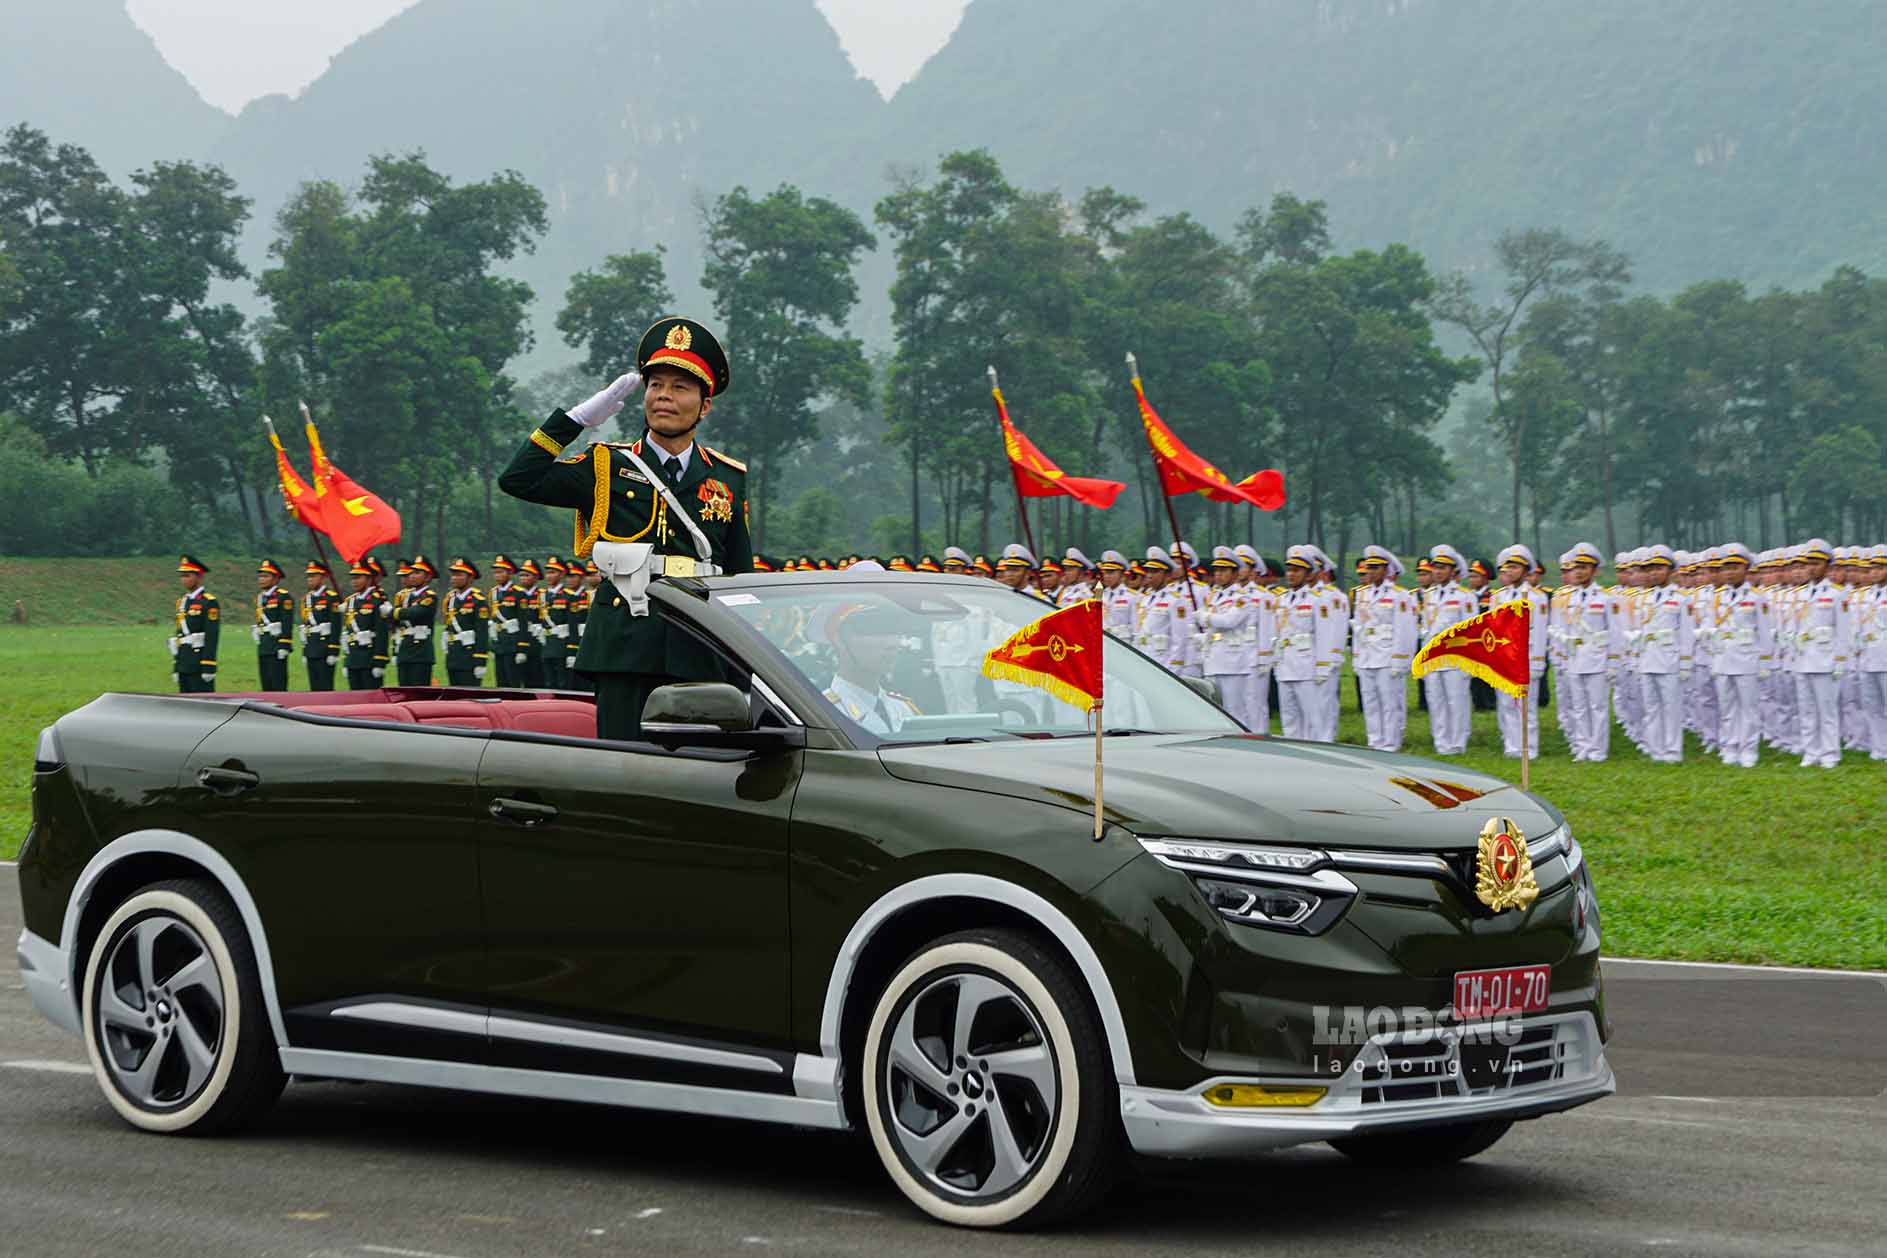 Trung tướng Nguyễn Trọng Bình, Phó Tổng Tham mưu trưởng Quân đội Nhân dân Việt Nam trên xe chỉ huy tham gia diễu binh.